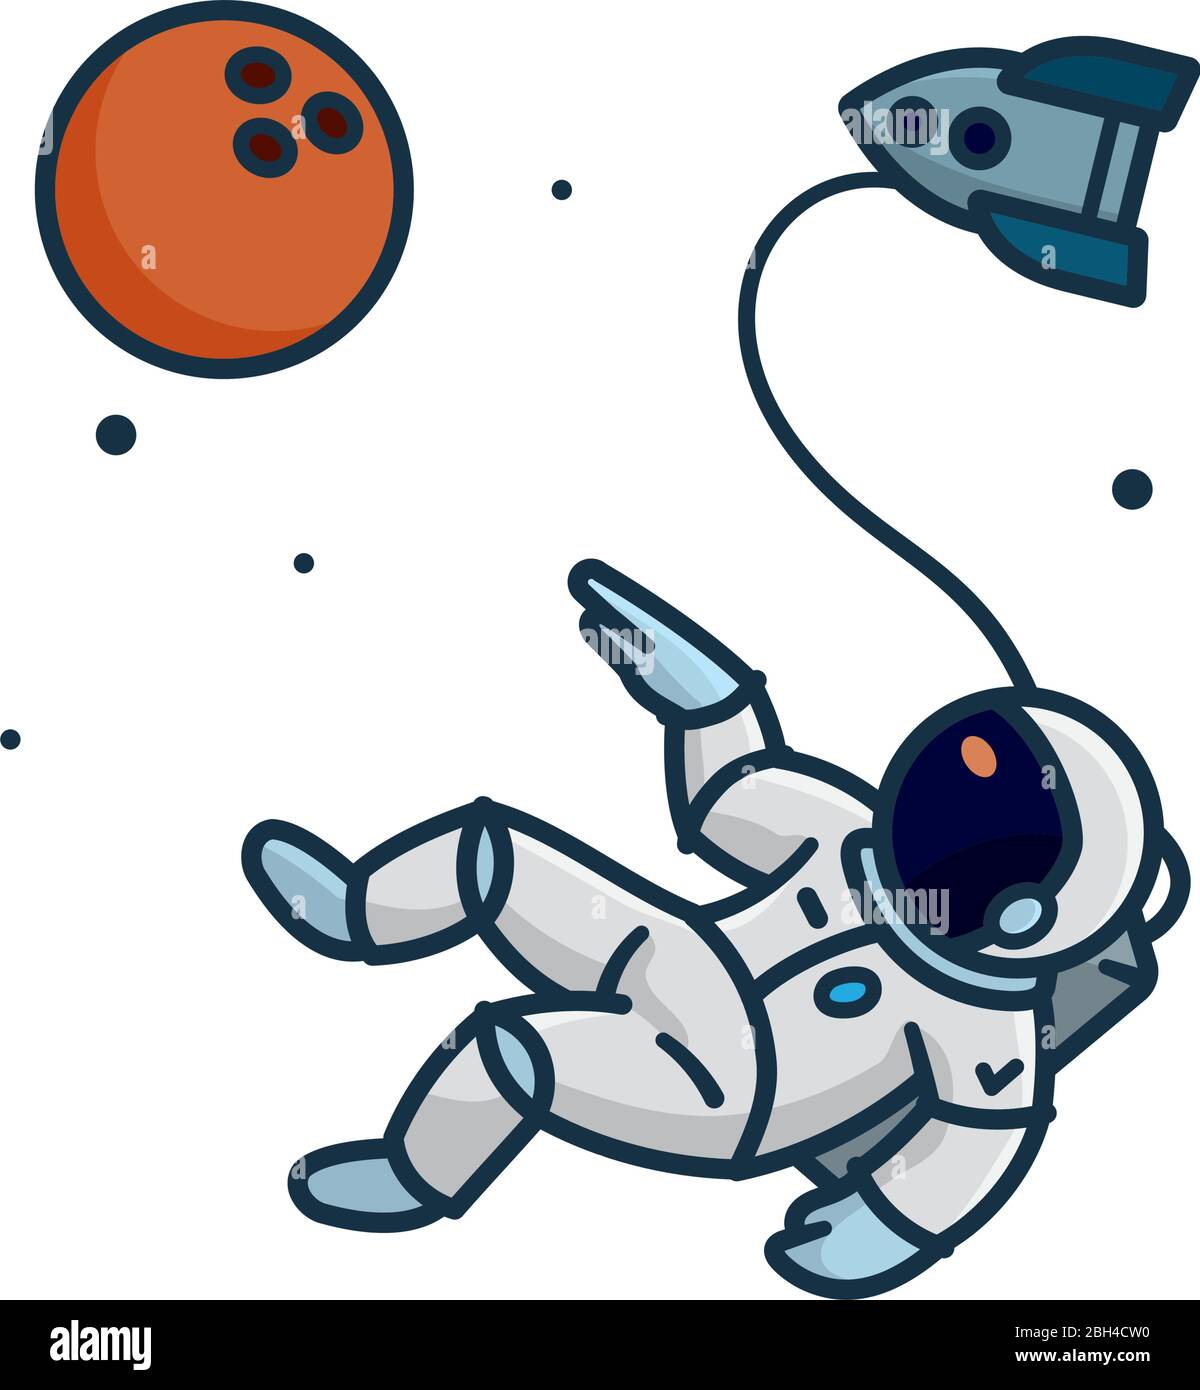 Astronaut zu Fuß im Weltraum, zeigt auf Bowling Ball förmigen Planeten, isolierte Vektor-Illustration für Space Day am 1. Mai. Stock Vektor